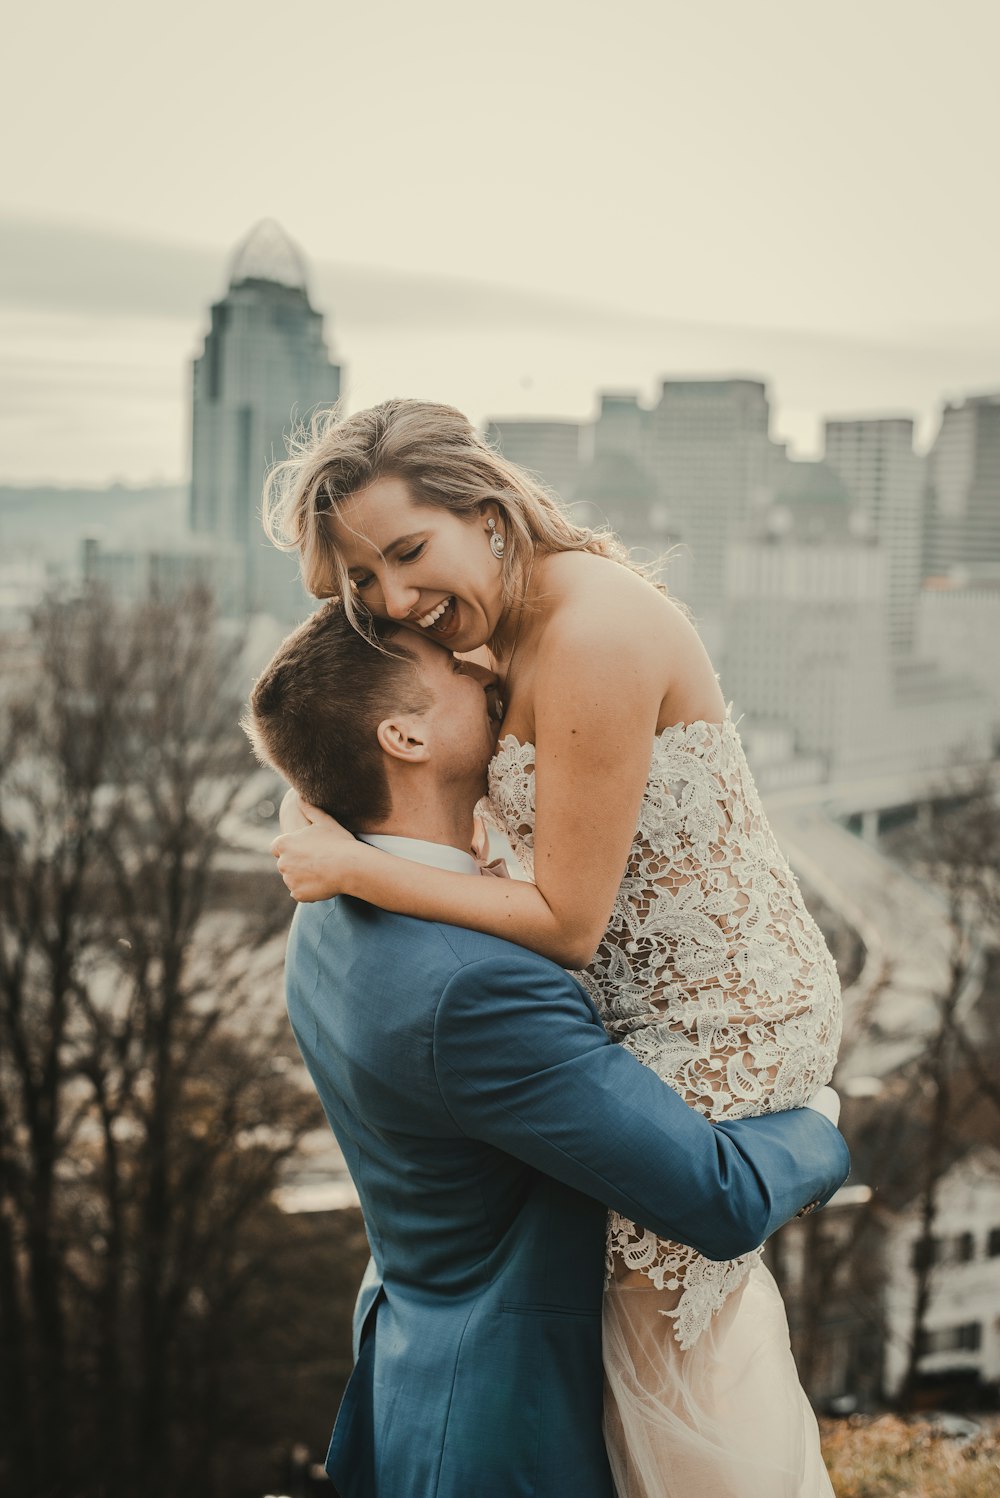 Una sposa e uno sposo che si abbracciano davanti allo skyline di una città